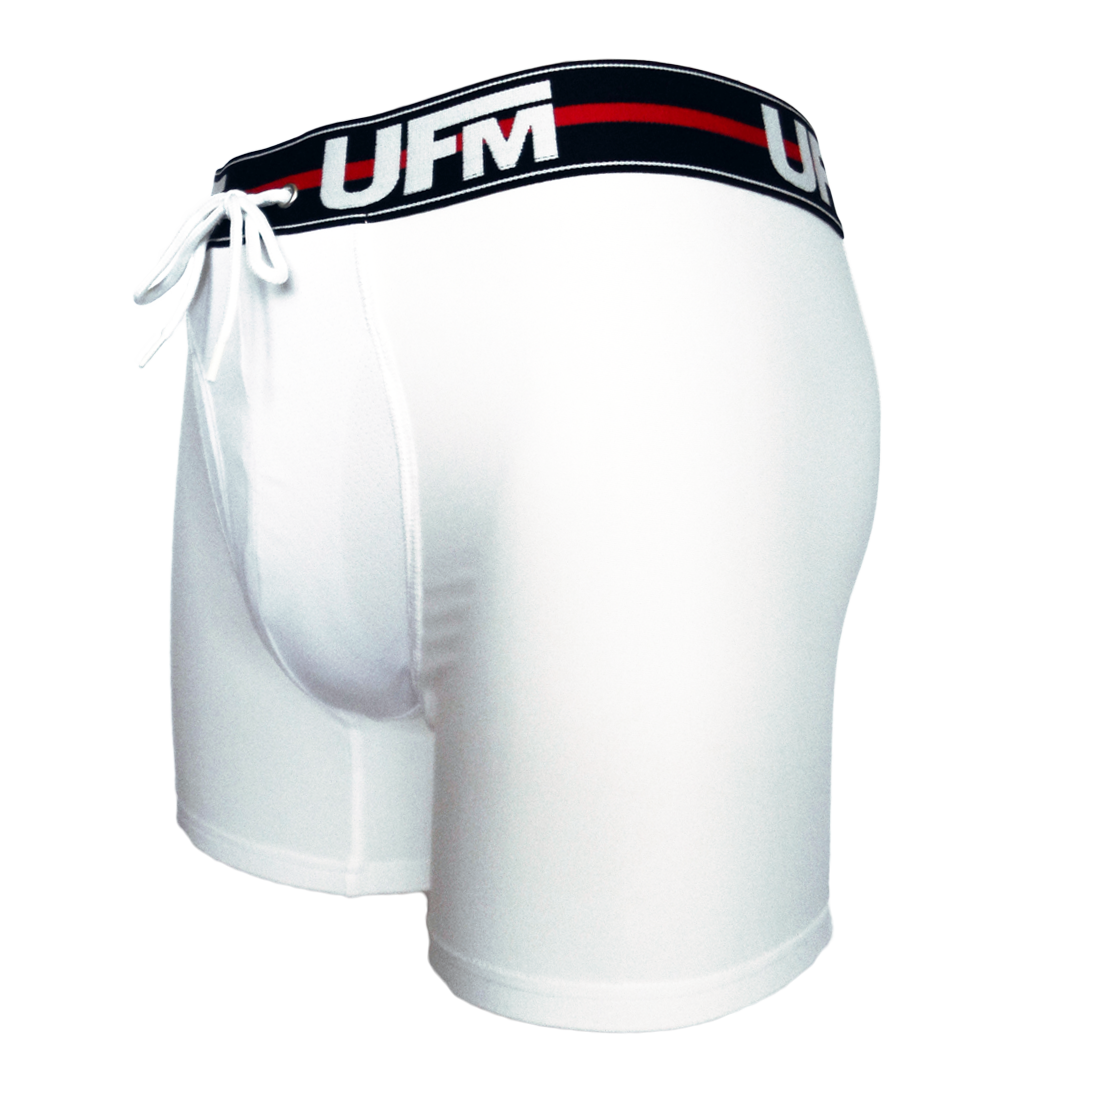 UFM Mens Underwear, Polyester-Spandex Mens Briefs, Regular and Adjustable  Support Pouch Men Underwear, 52-54 waist, Royal Blue 